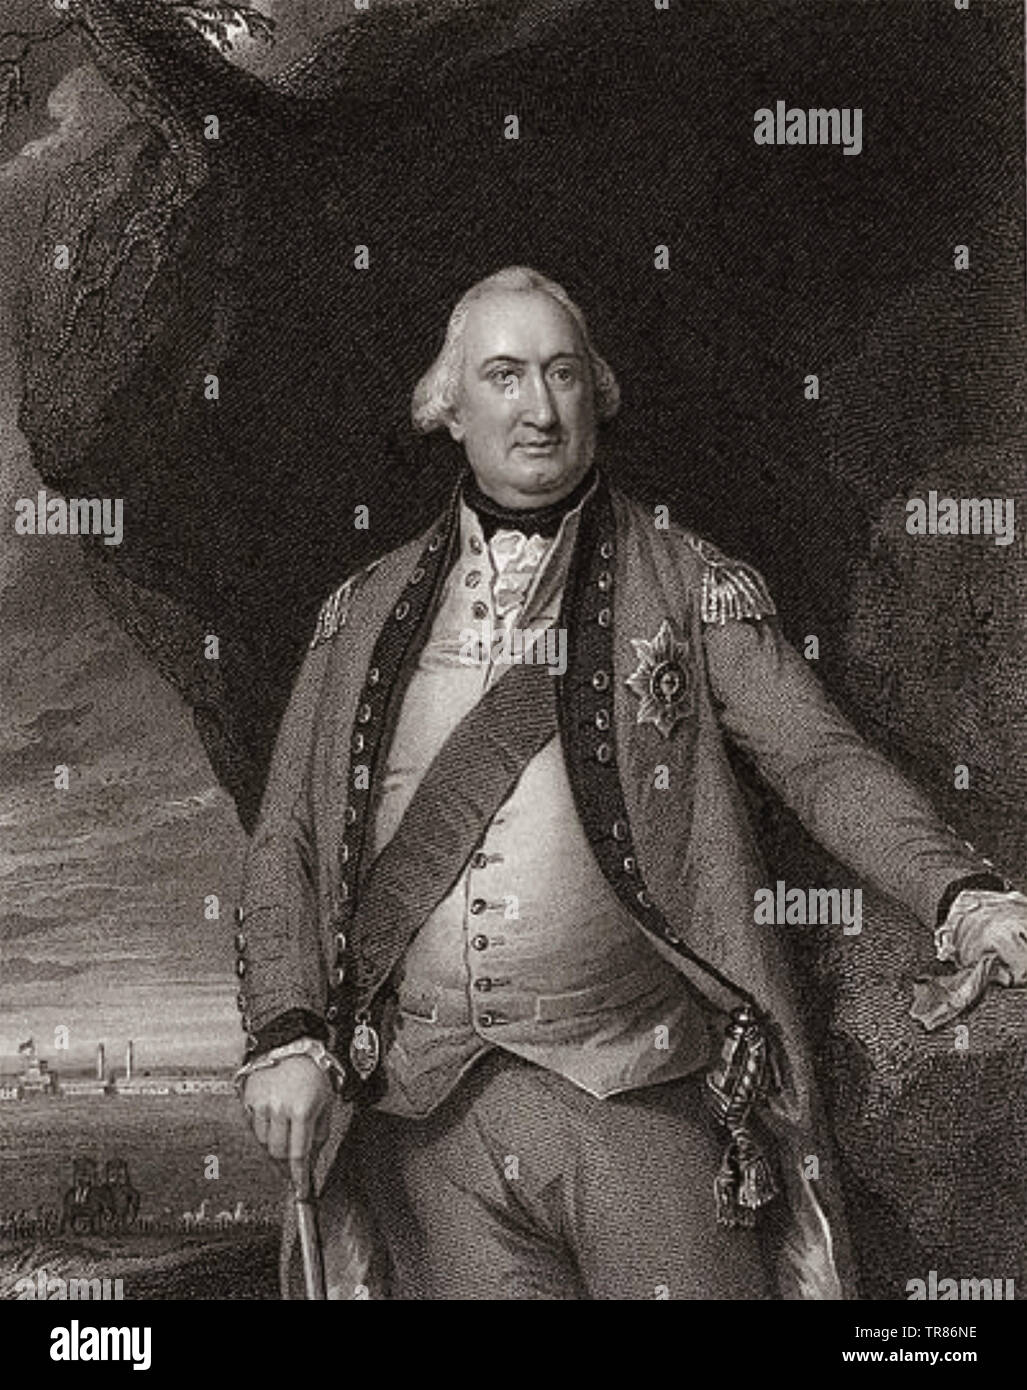 CHARLES CORNWALLIS, 1er marquis Cornwallis (1738-1805) général de l'armée britannique vers 1795 Banque D'Images